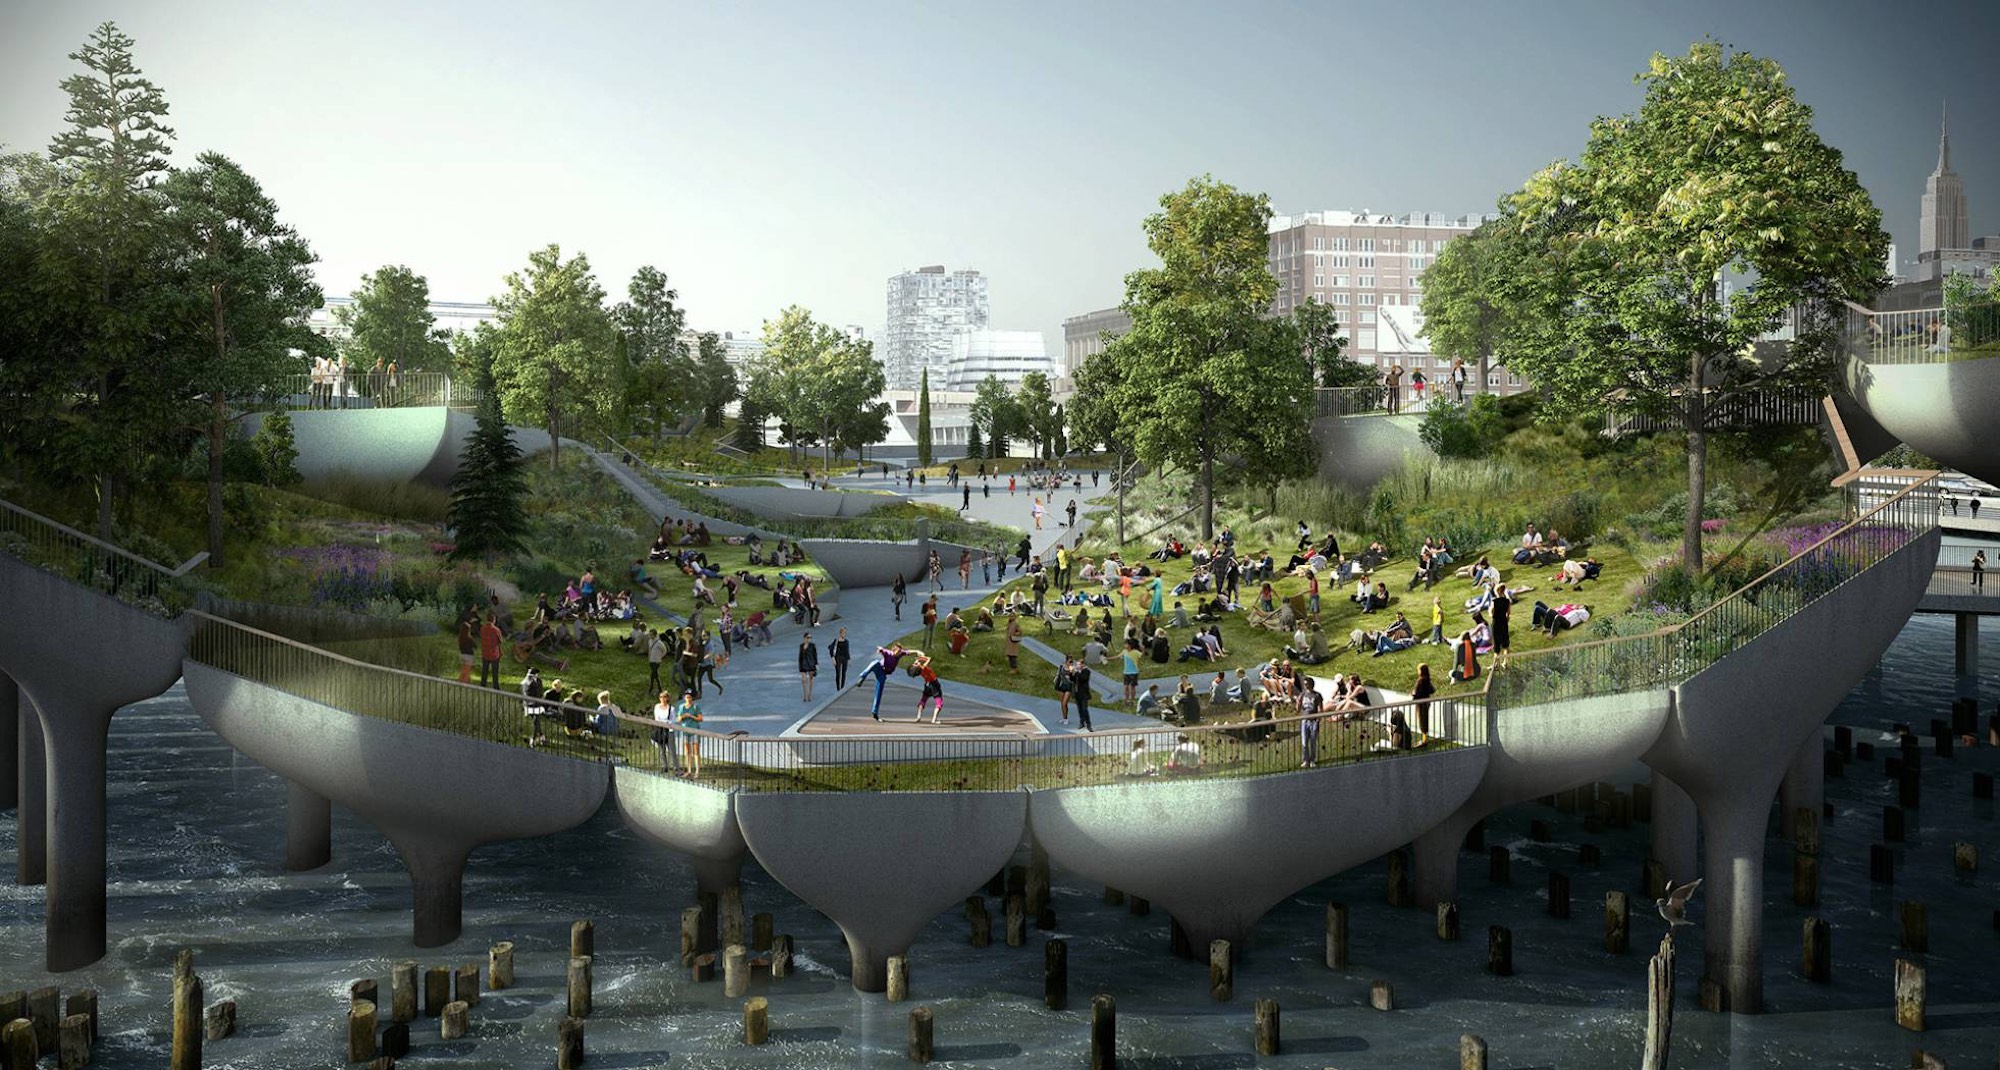 El parque flotante que quieren construir frente a los muelles de Manhattan